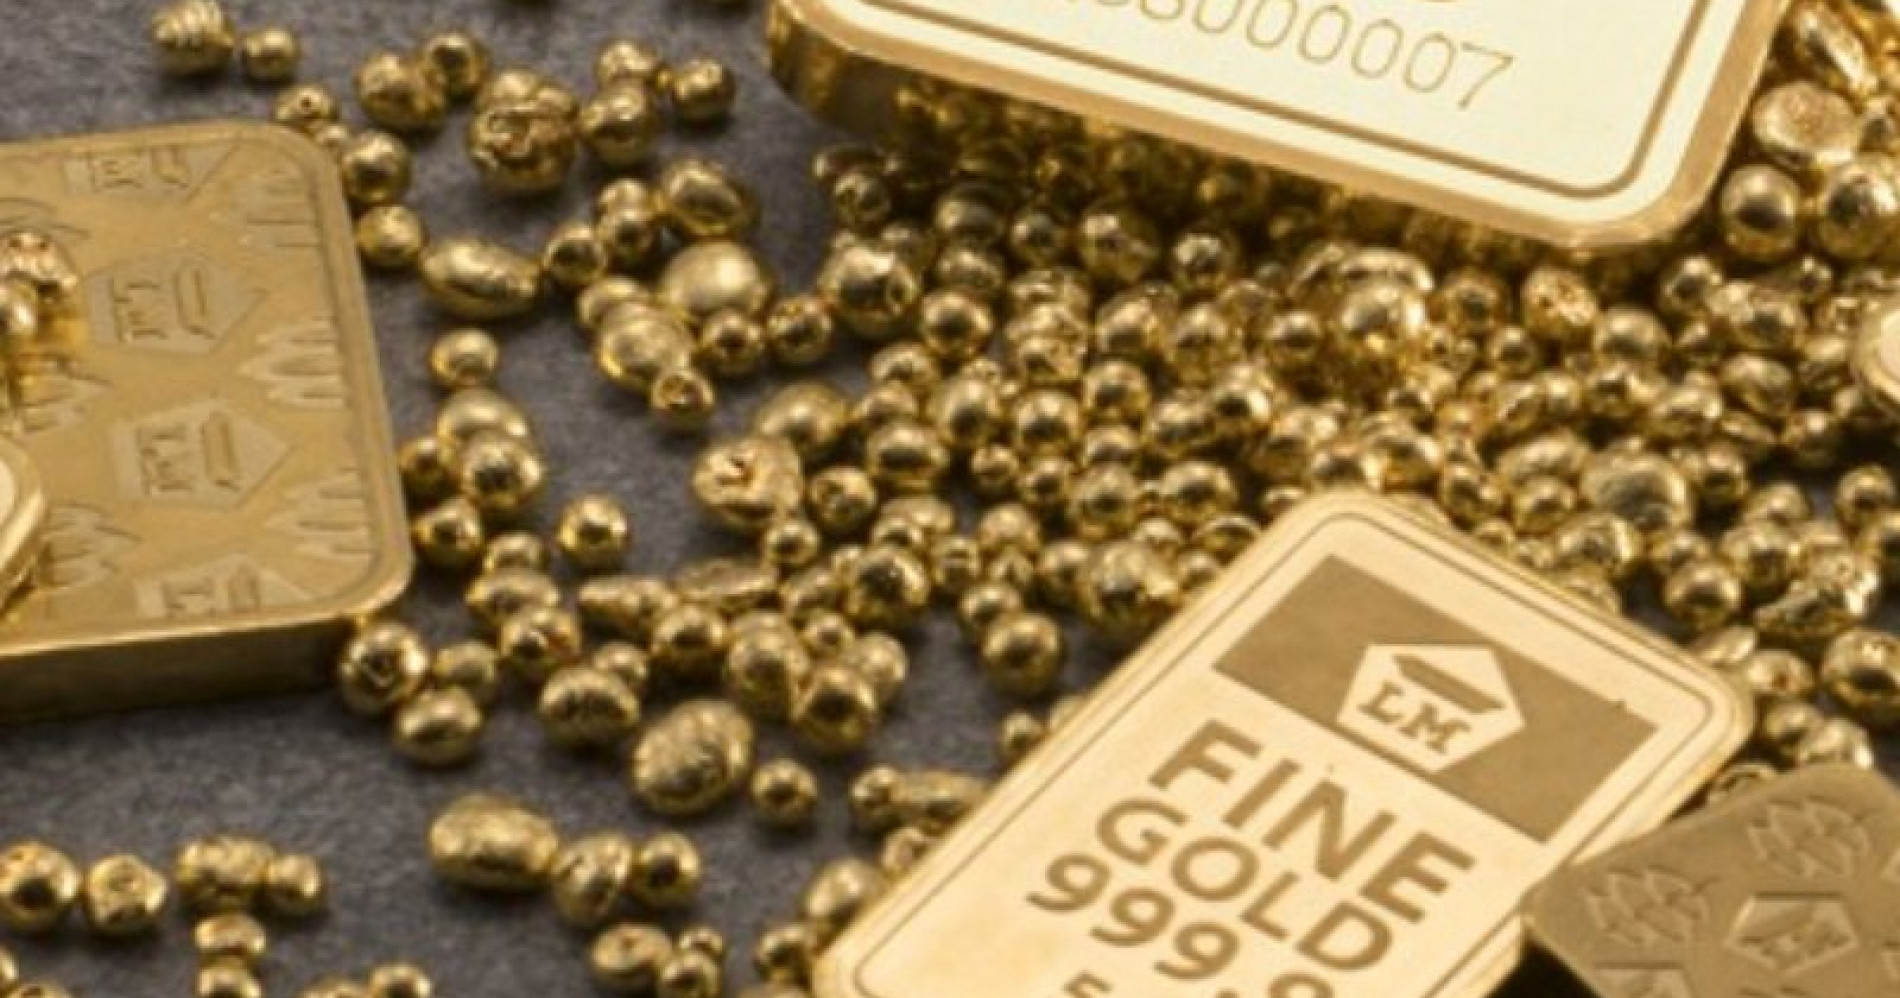 Investasi emas dengan mudah (Sumber gambar: market.bisnis.com)